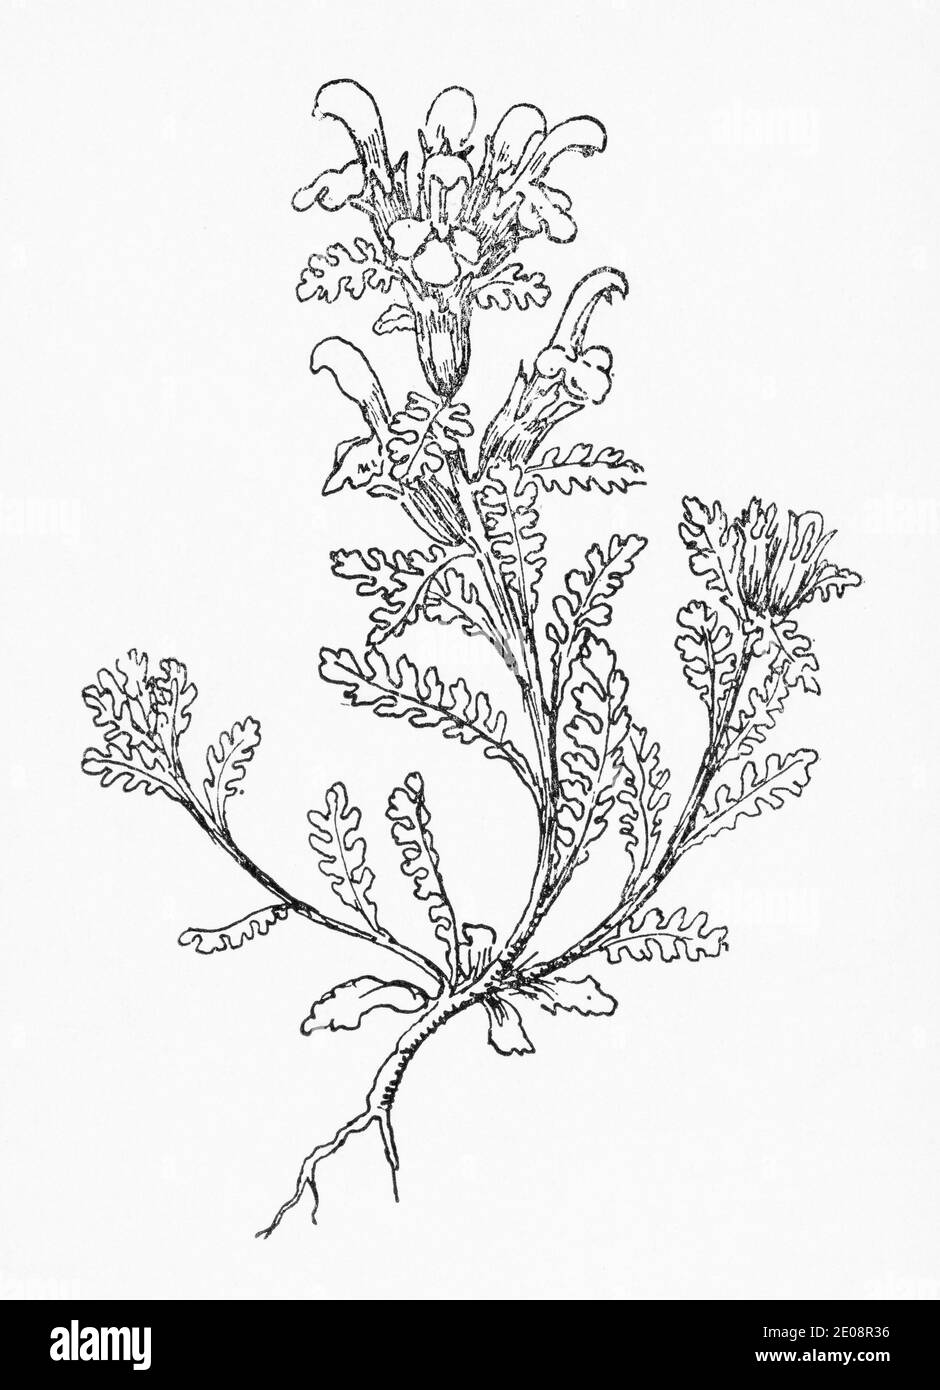 Old botanical illustration engraving of Pedicularis sylvatica / Lousewort. syn. Pedicularis gredensis & Pedicularis procumbens. See Notes Stock Photo